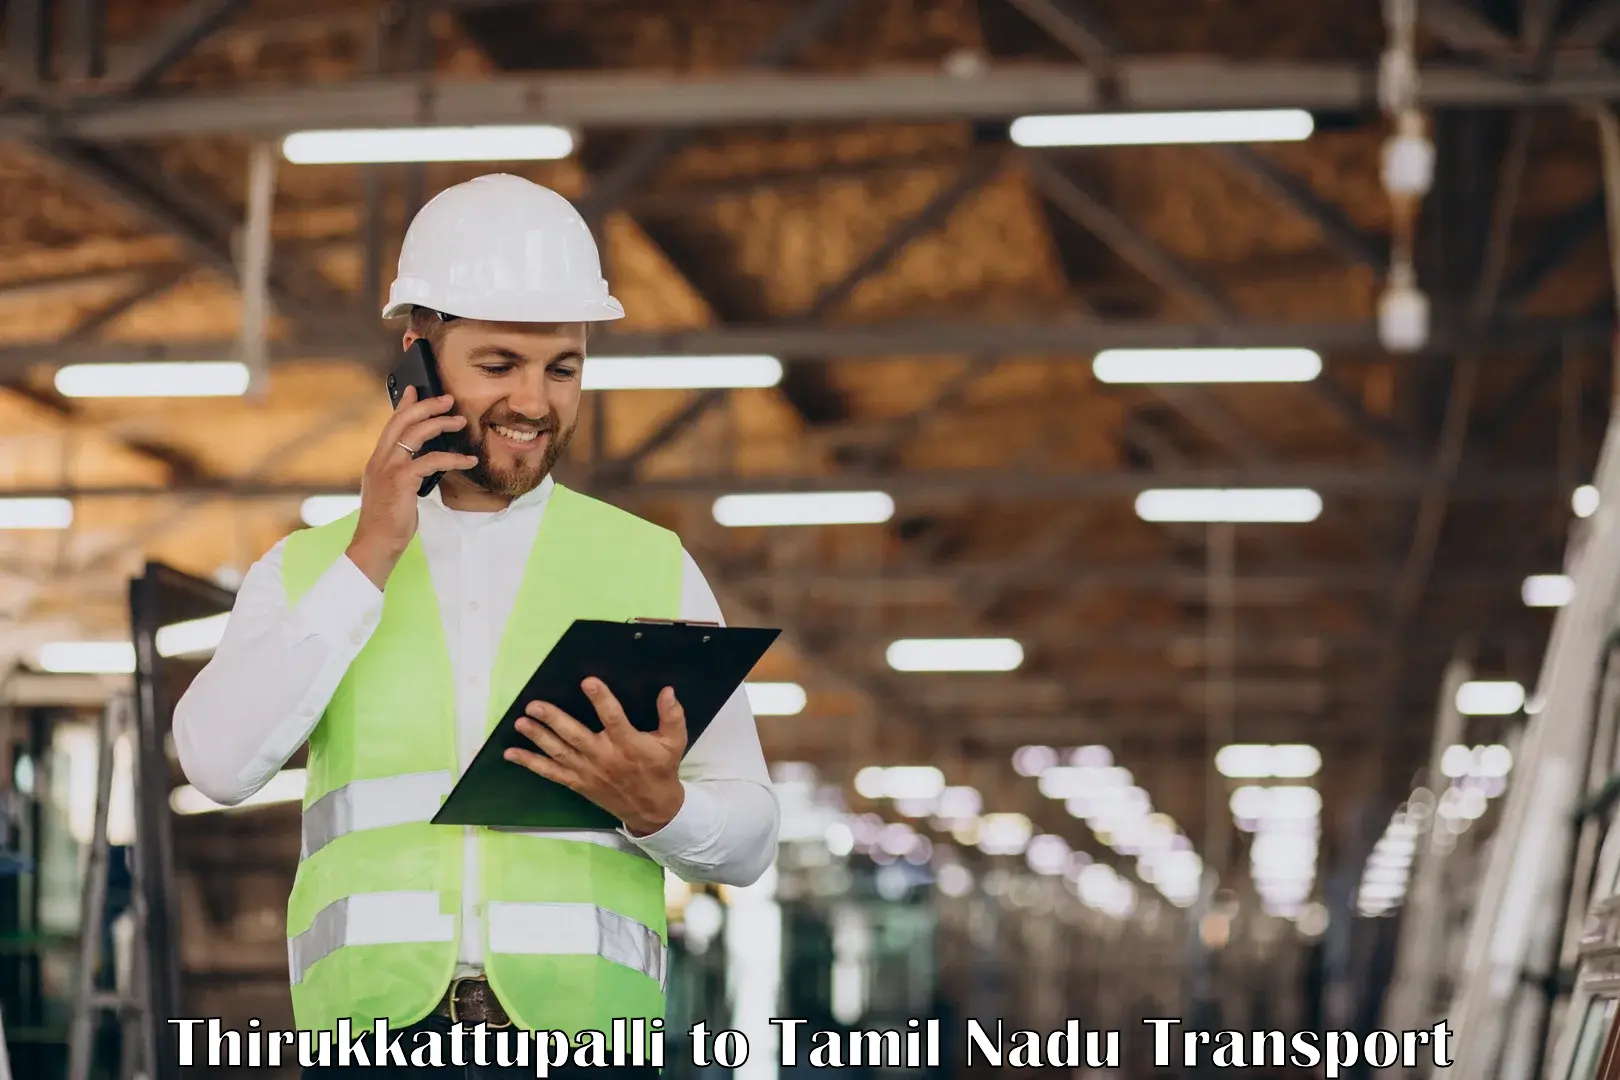 Truck transport companies in India Thirukkattupalli to Avinashi